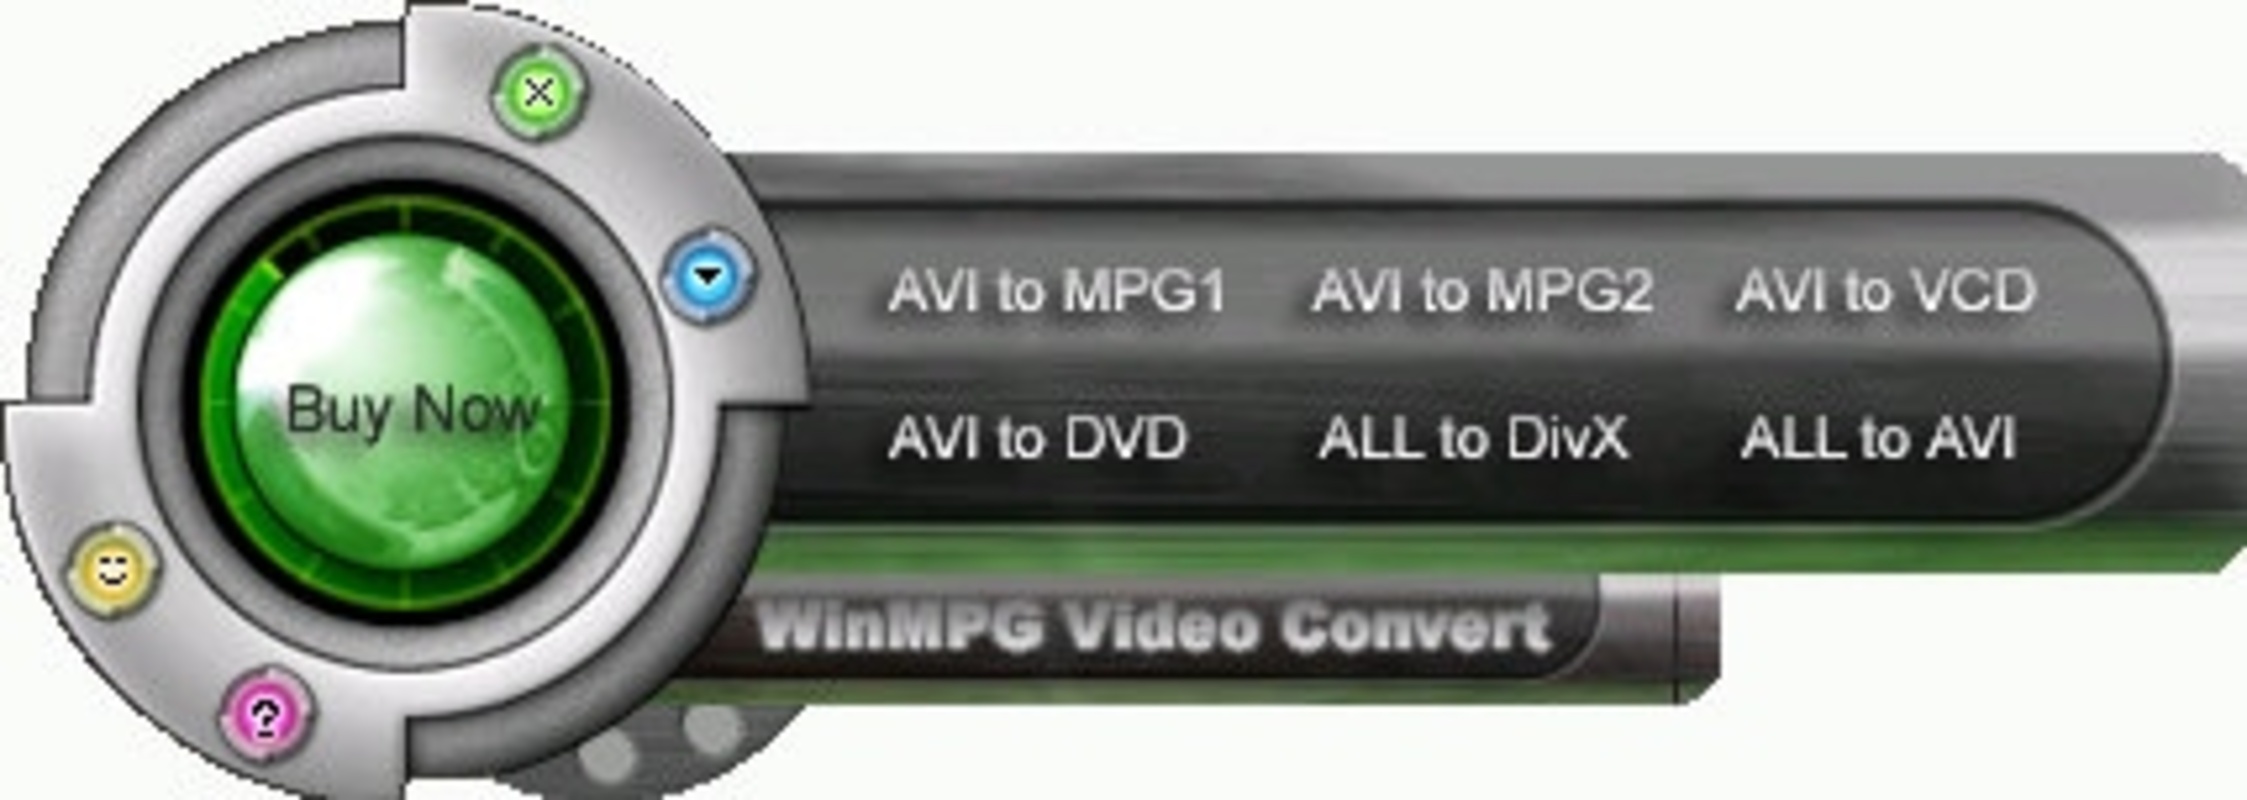 WinMPG Video Convert 9.3.5 for Windows Screenshot 1